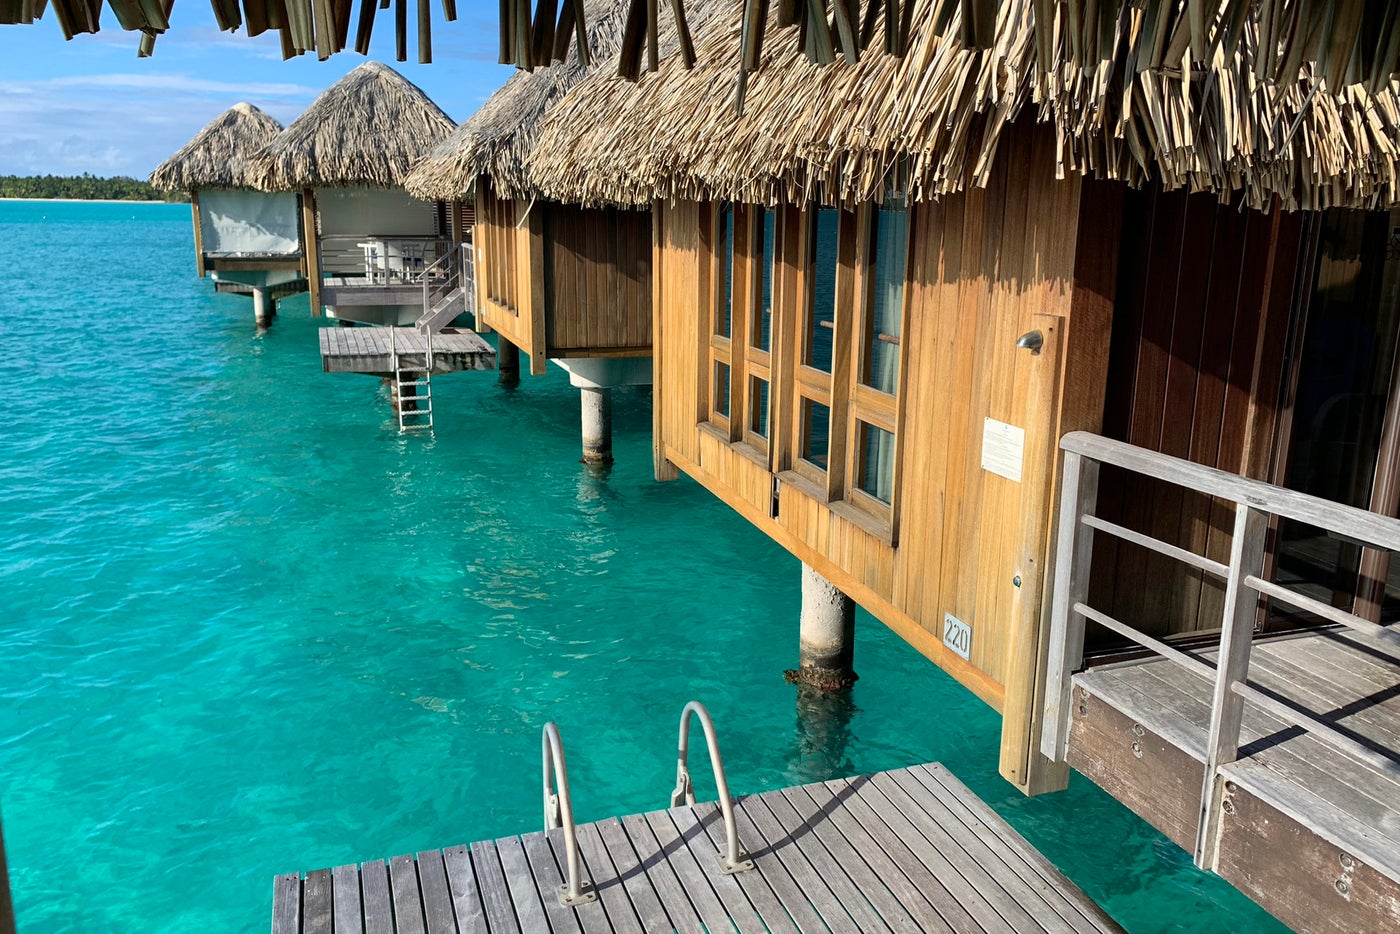 St. Regis Bora Bora (Garden Villa & Deluxe Overwater) Review